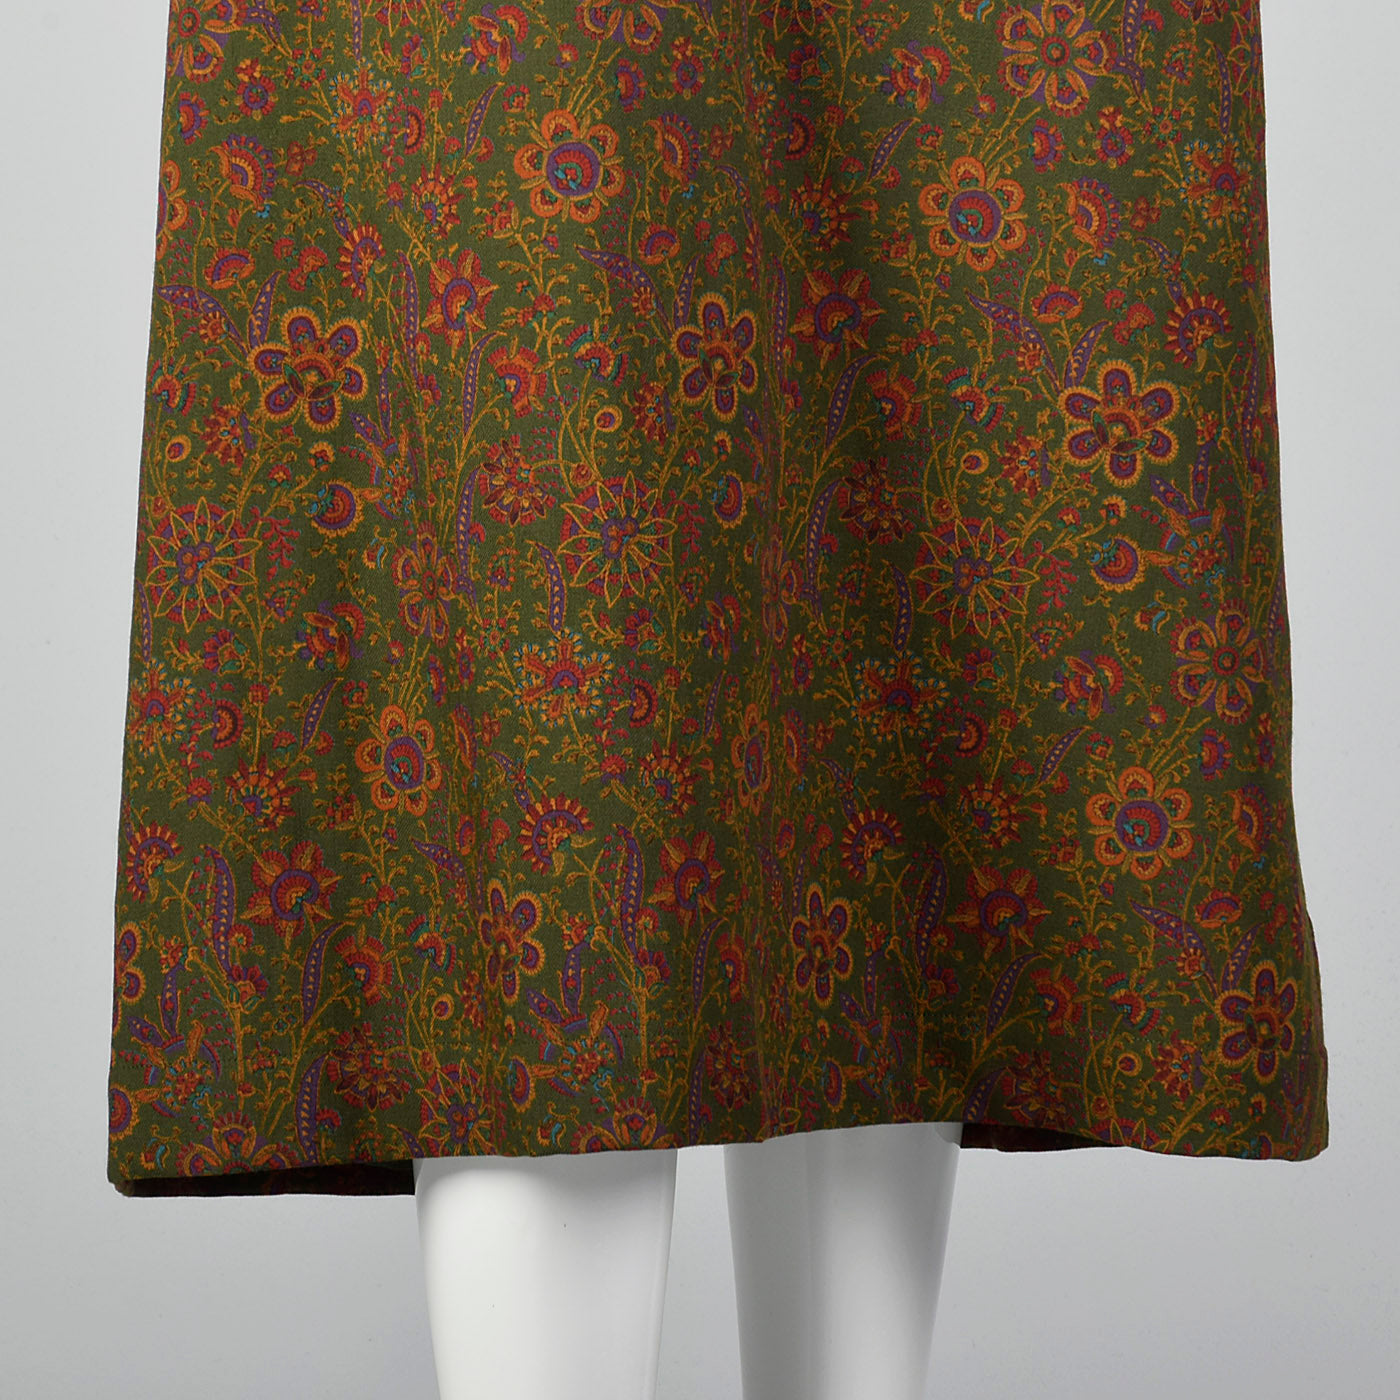 1970s Yves Saint Laurent Floral Print Dress